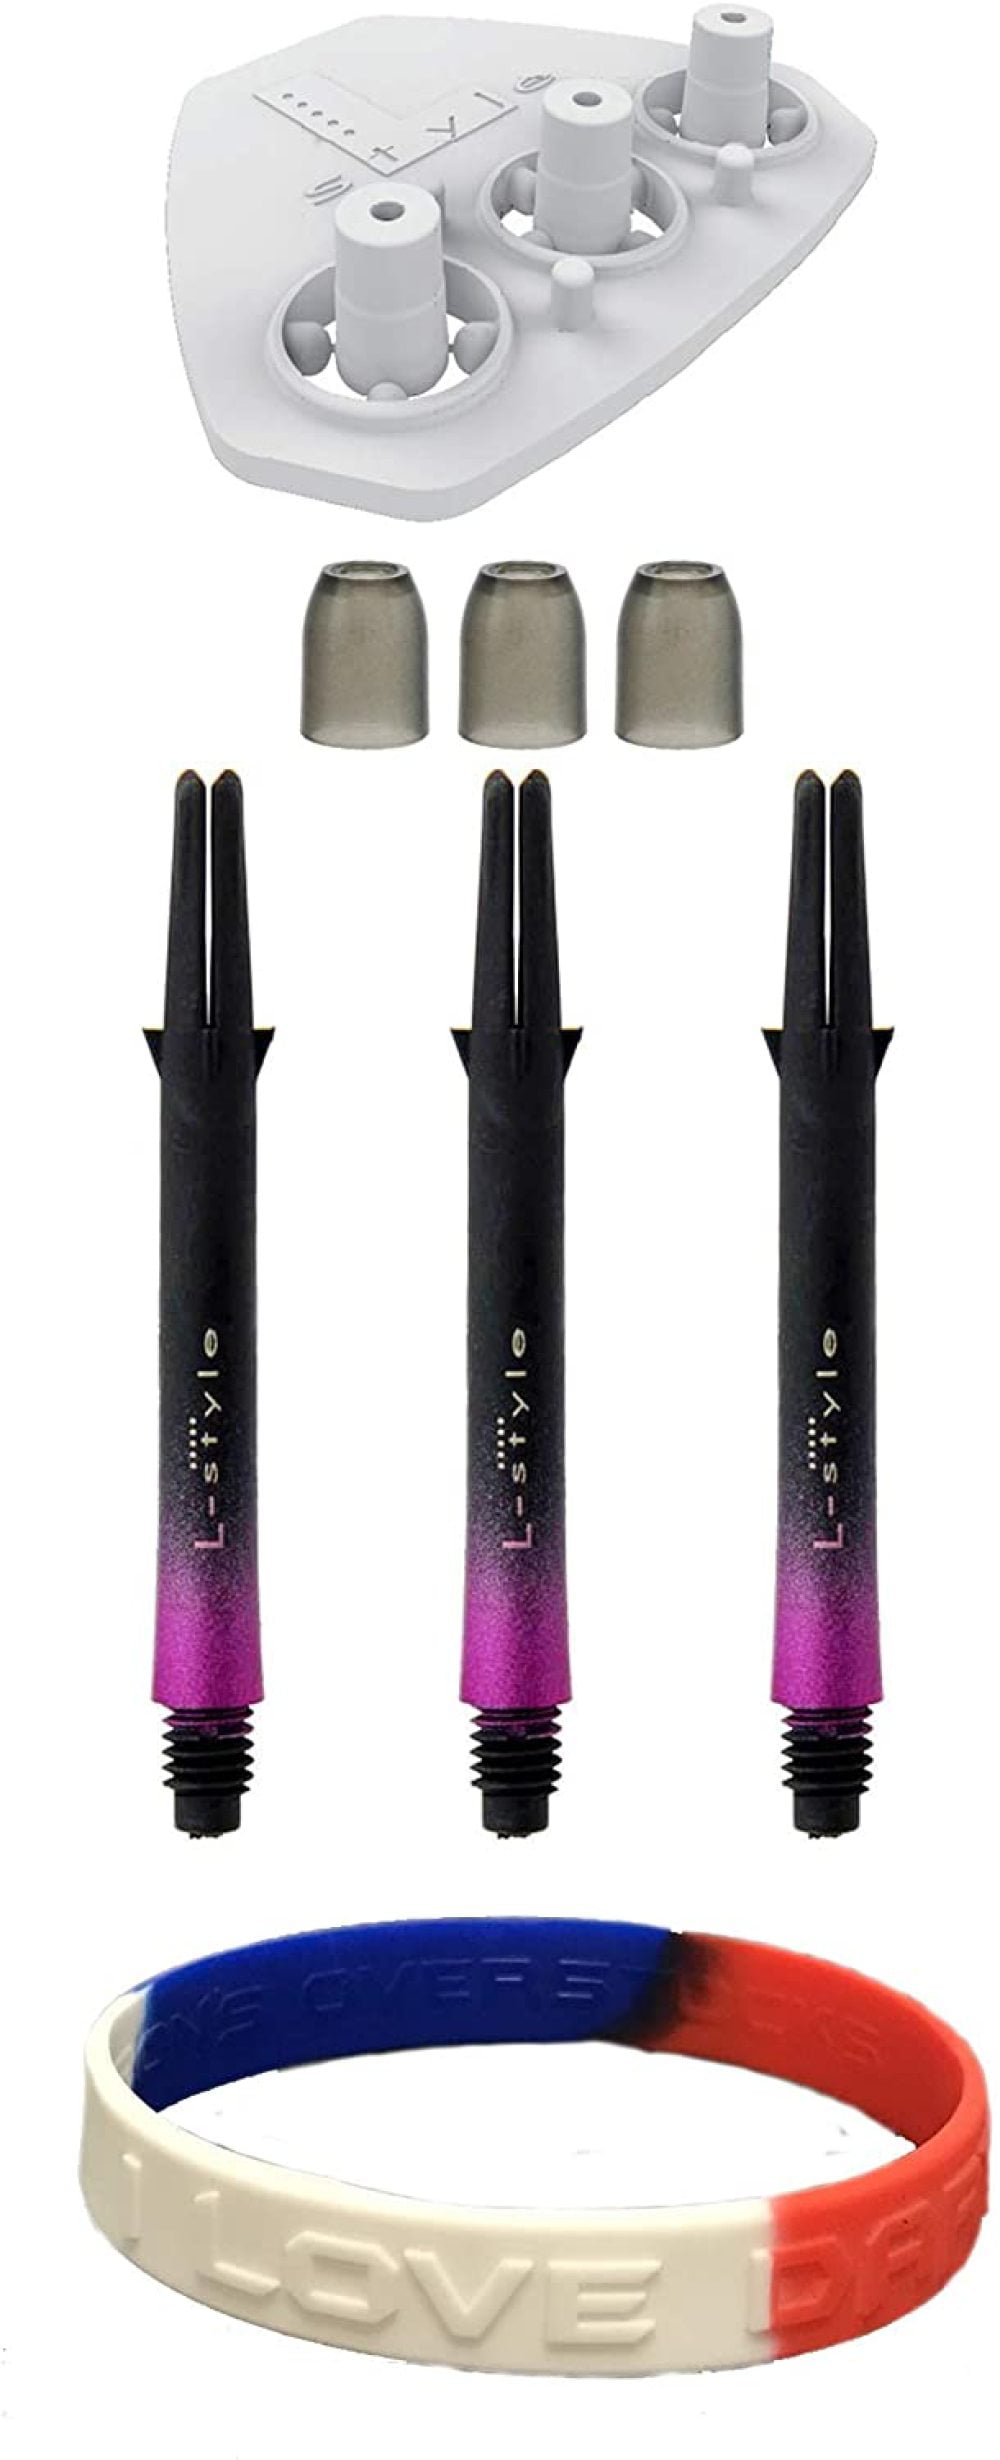 2 New sets dart shaft spinners mediium pink 